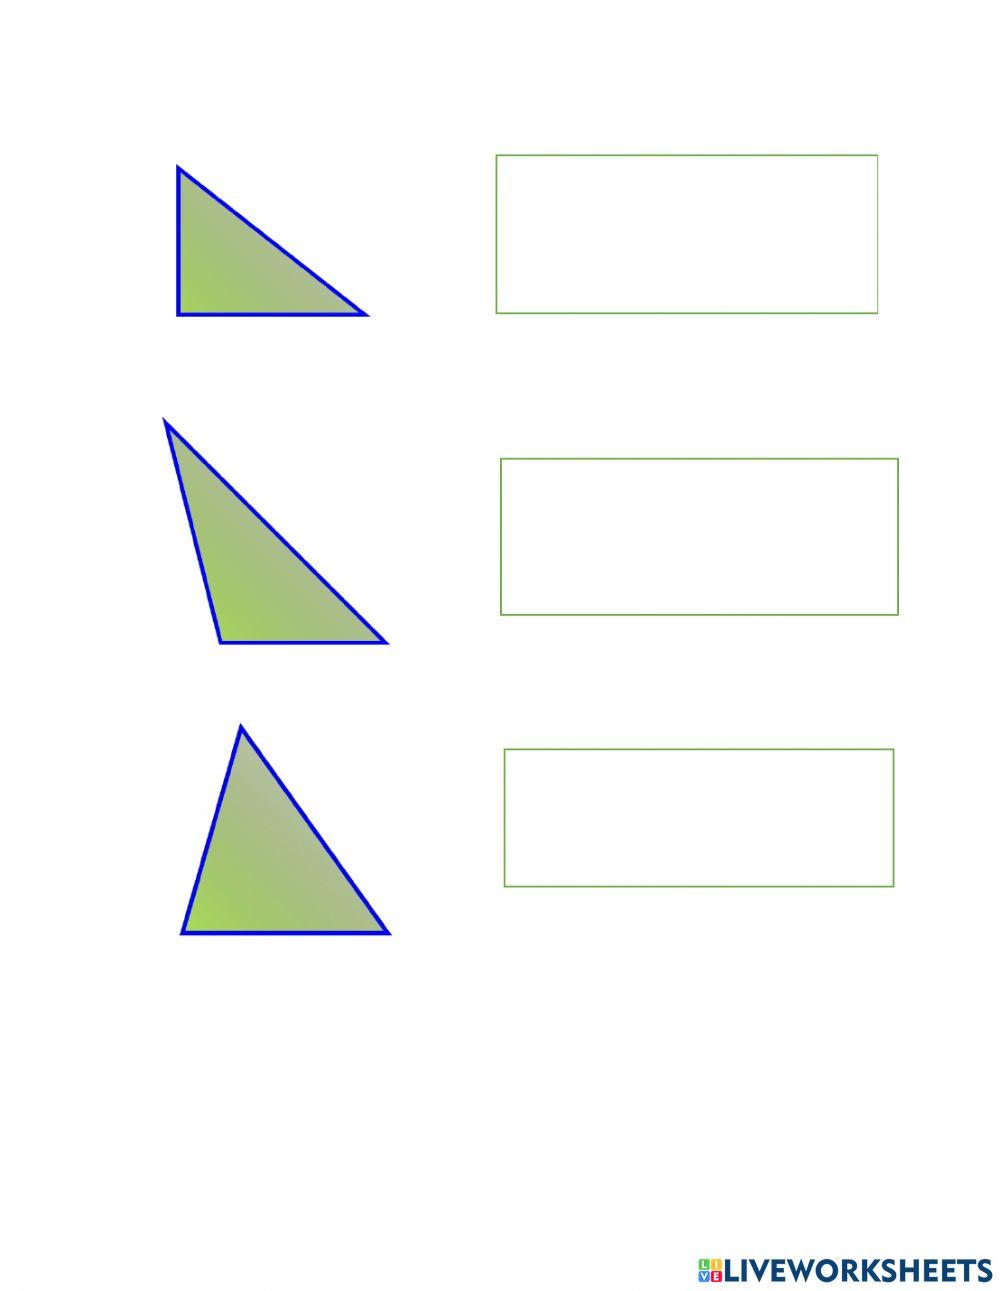 Clasificacion de triangulos